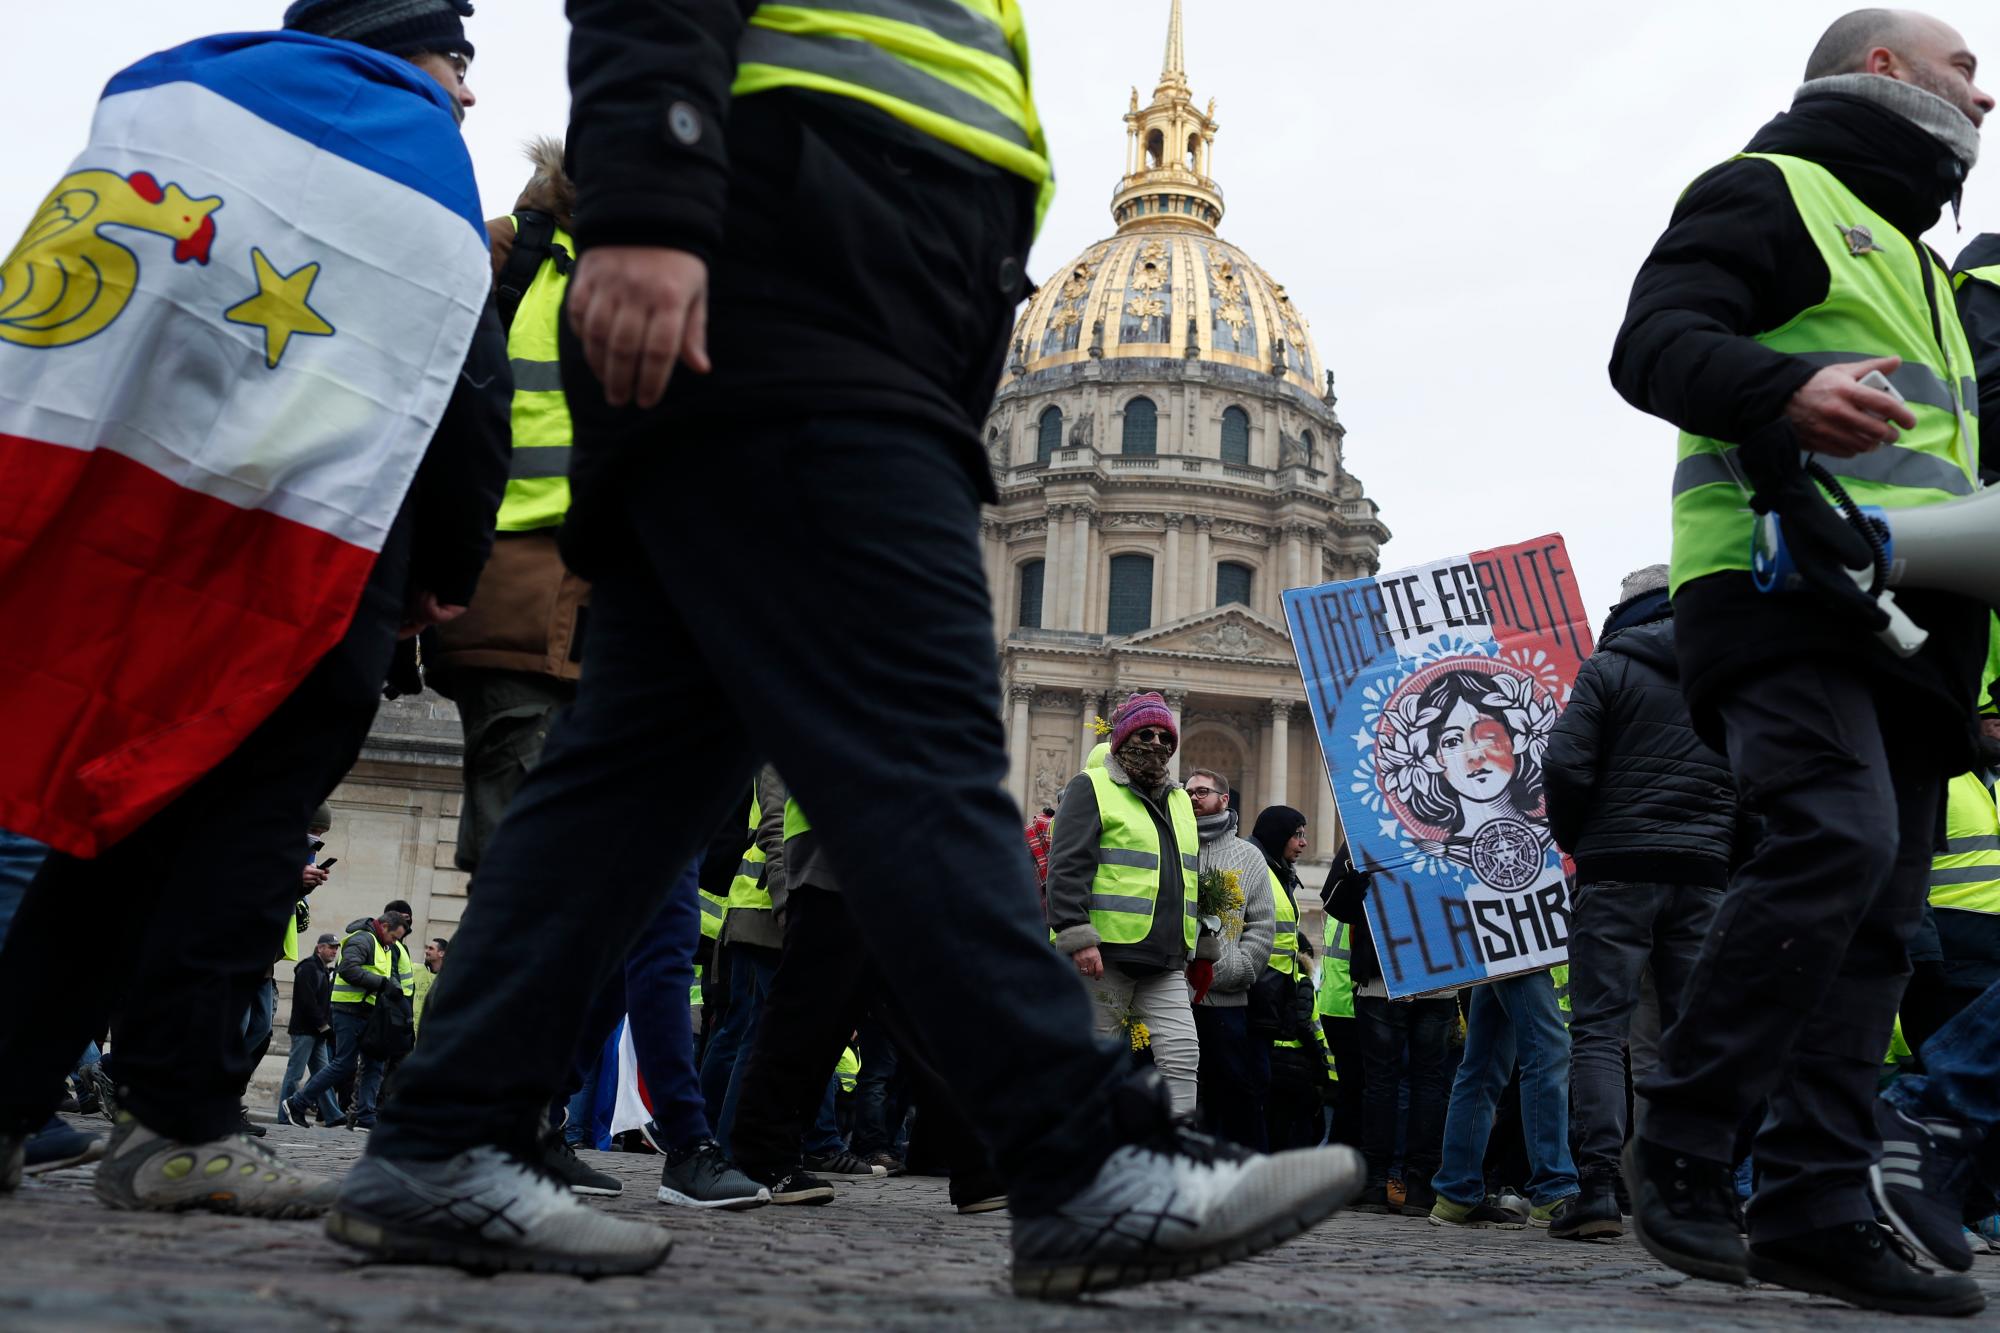 Los manifestantes del chaleco amarillo marchan con un cartel que dice “La represión continúa” durante una marcha el sábado 19 de enero de 2019 en París. Miles de manifestantes de chalecos amarillos se congregaron en varias ciudades francesas por décimo fin de semana consecutivo el sábado, a pesar del debate nacional iniciado esta semana por el presidente Emmanuel Macron con el objetivo de mitigar su ira.